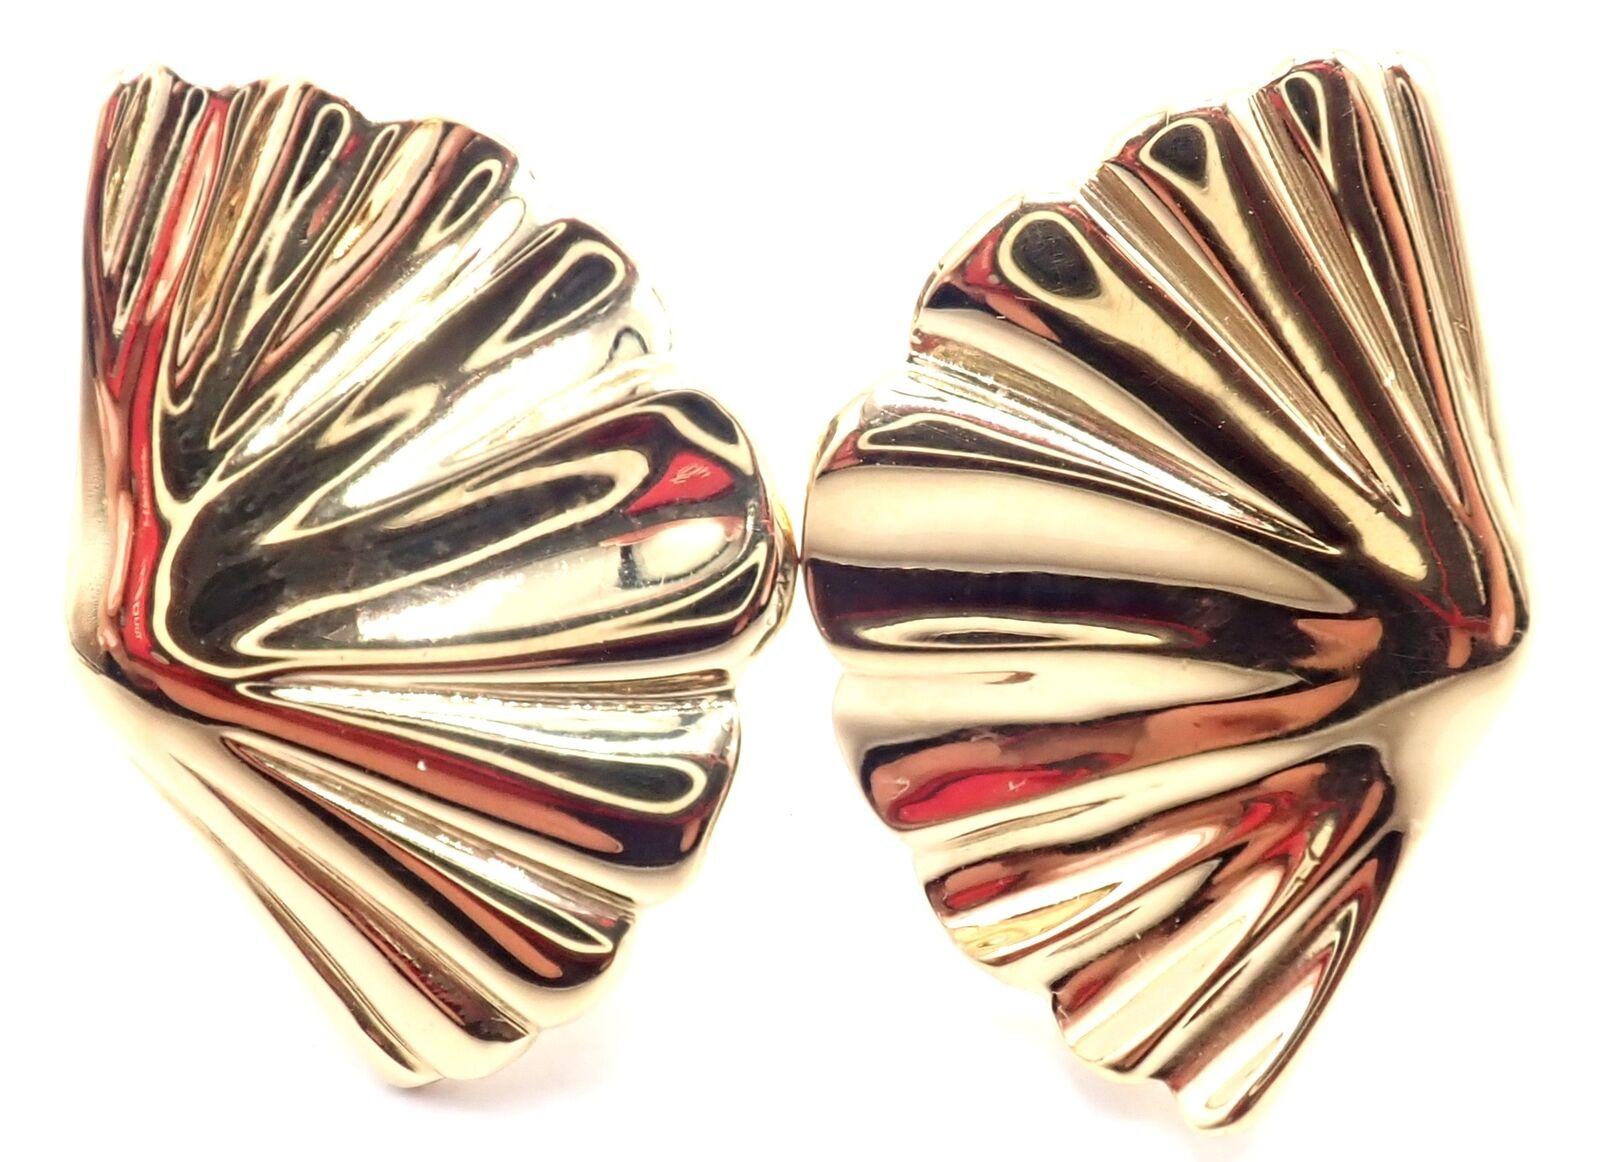 18k Gelbgold Vintage Fächermuschel-Ohrringe von Tiffany & Co. 
Diese Ohrringe sind für nicht gepiercte Ohren gedacht, können aber durch Hinzufügen von Stiften für gepiercte Ohren umgewandelt werden.
Einzelheiten: 
Gewicht: 11,7 Gramm
Abmessungen: